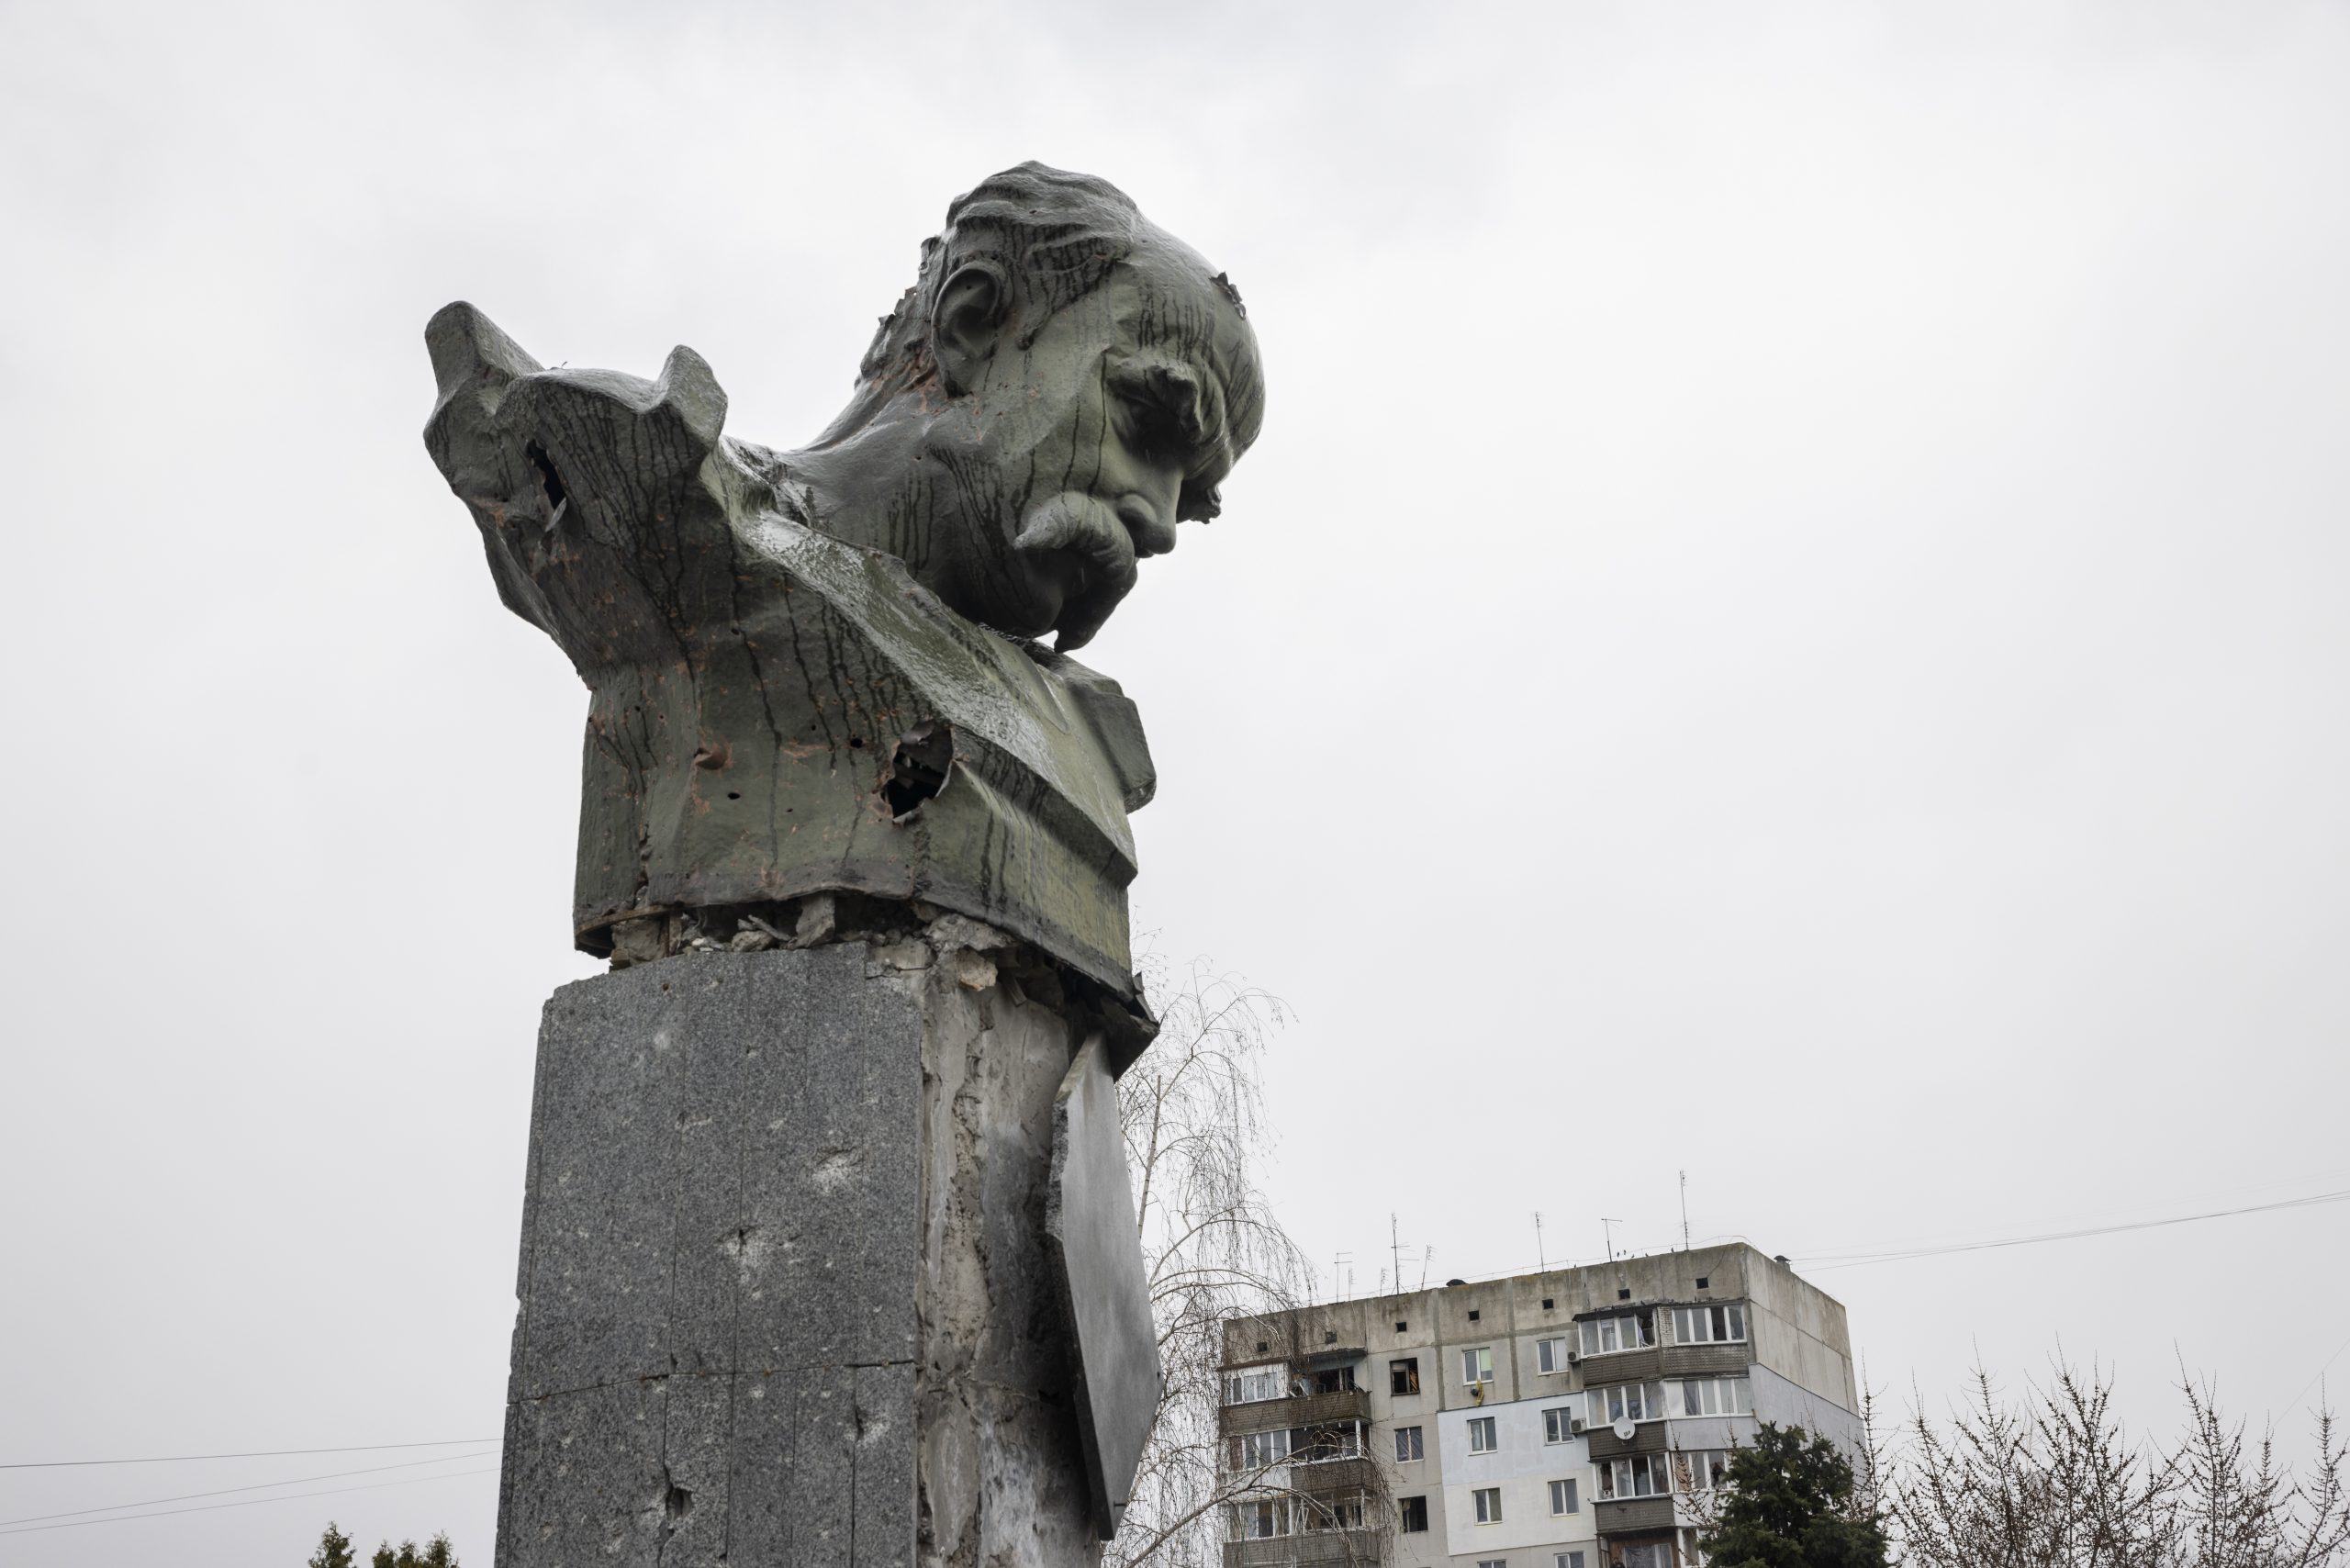 Le buste du grand poète ukrainien Taras Shevchenko vandalisé par les Russes. On distingue des impacts dans la pierre et le métal.